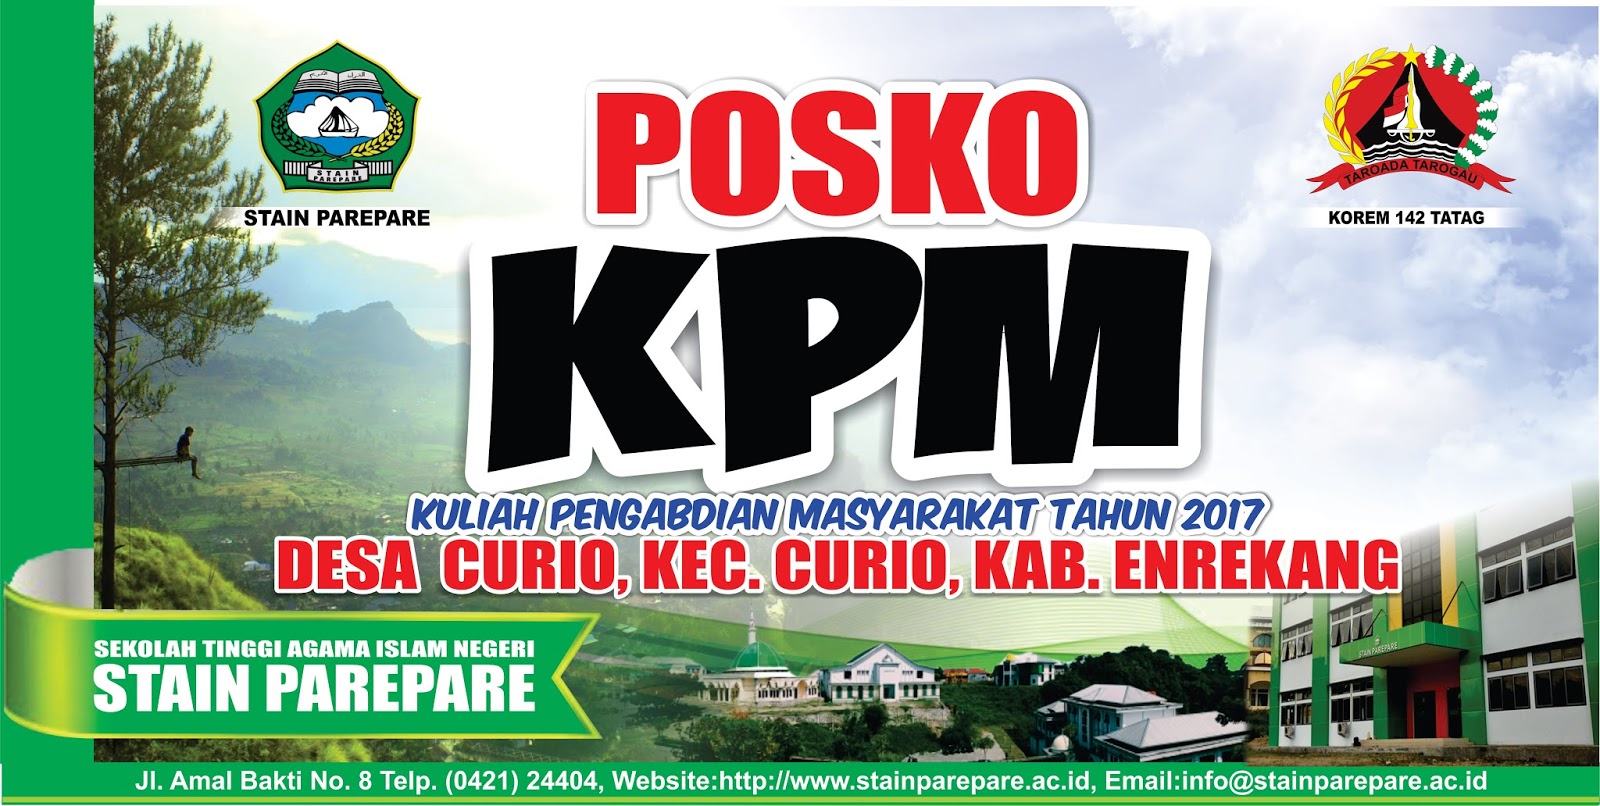 Download Gratis Contoh Desain  Banner Posko Kkn  Full HD 